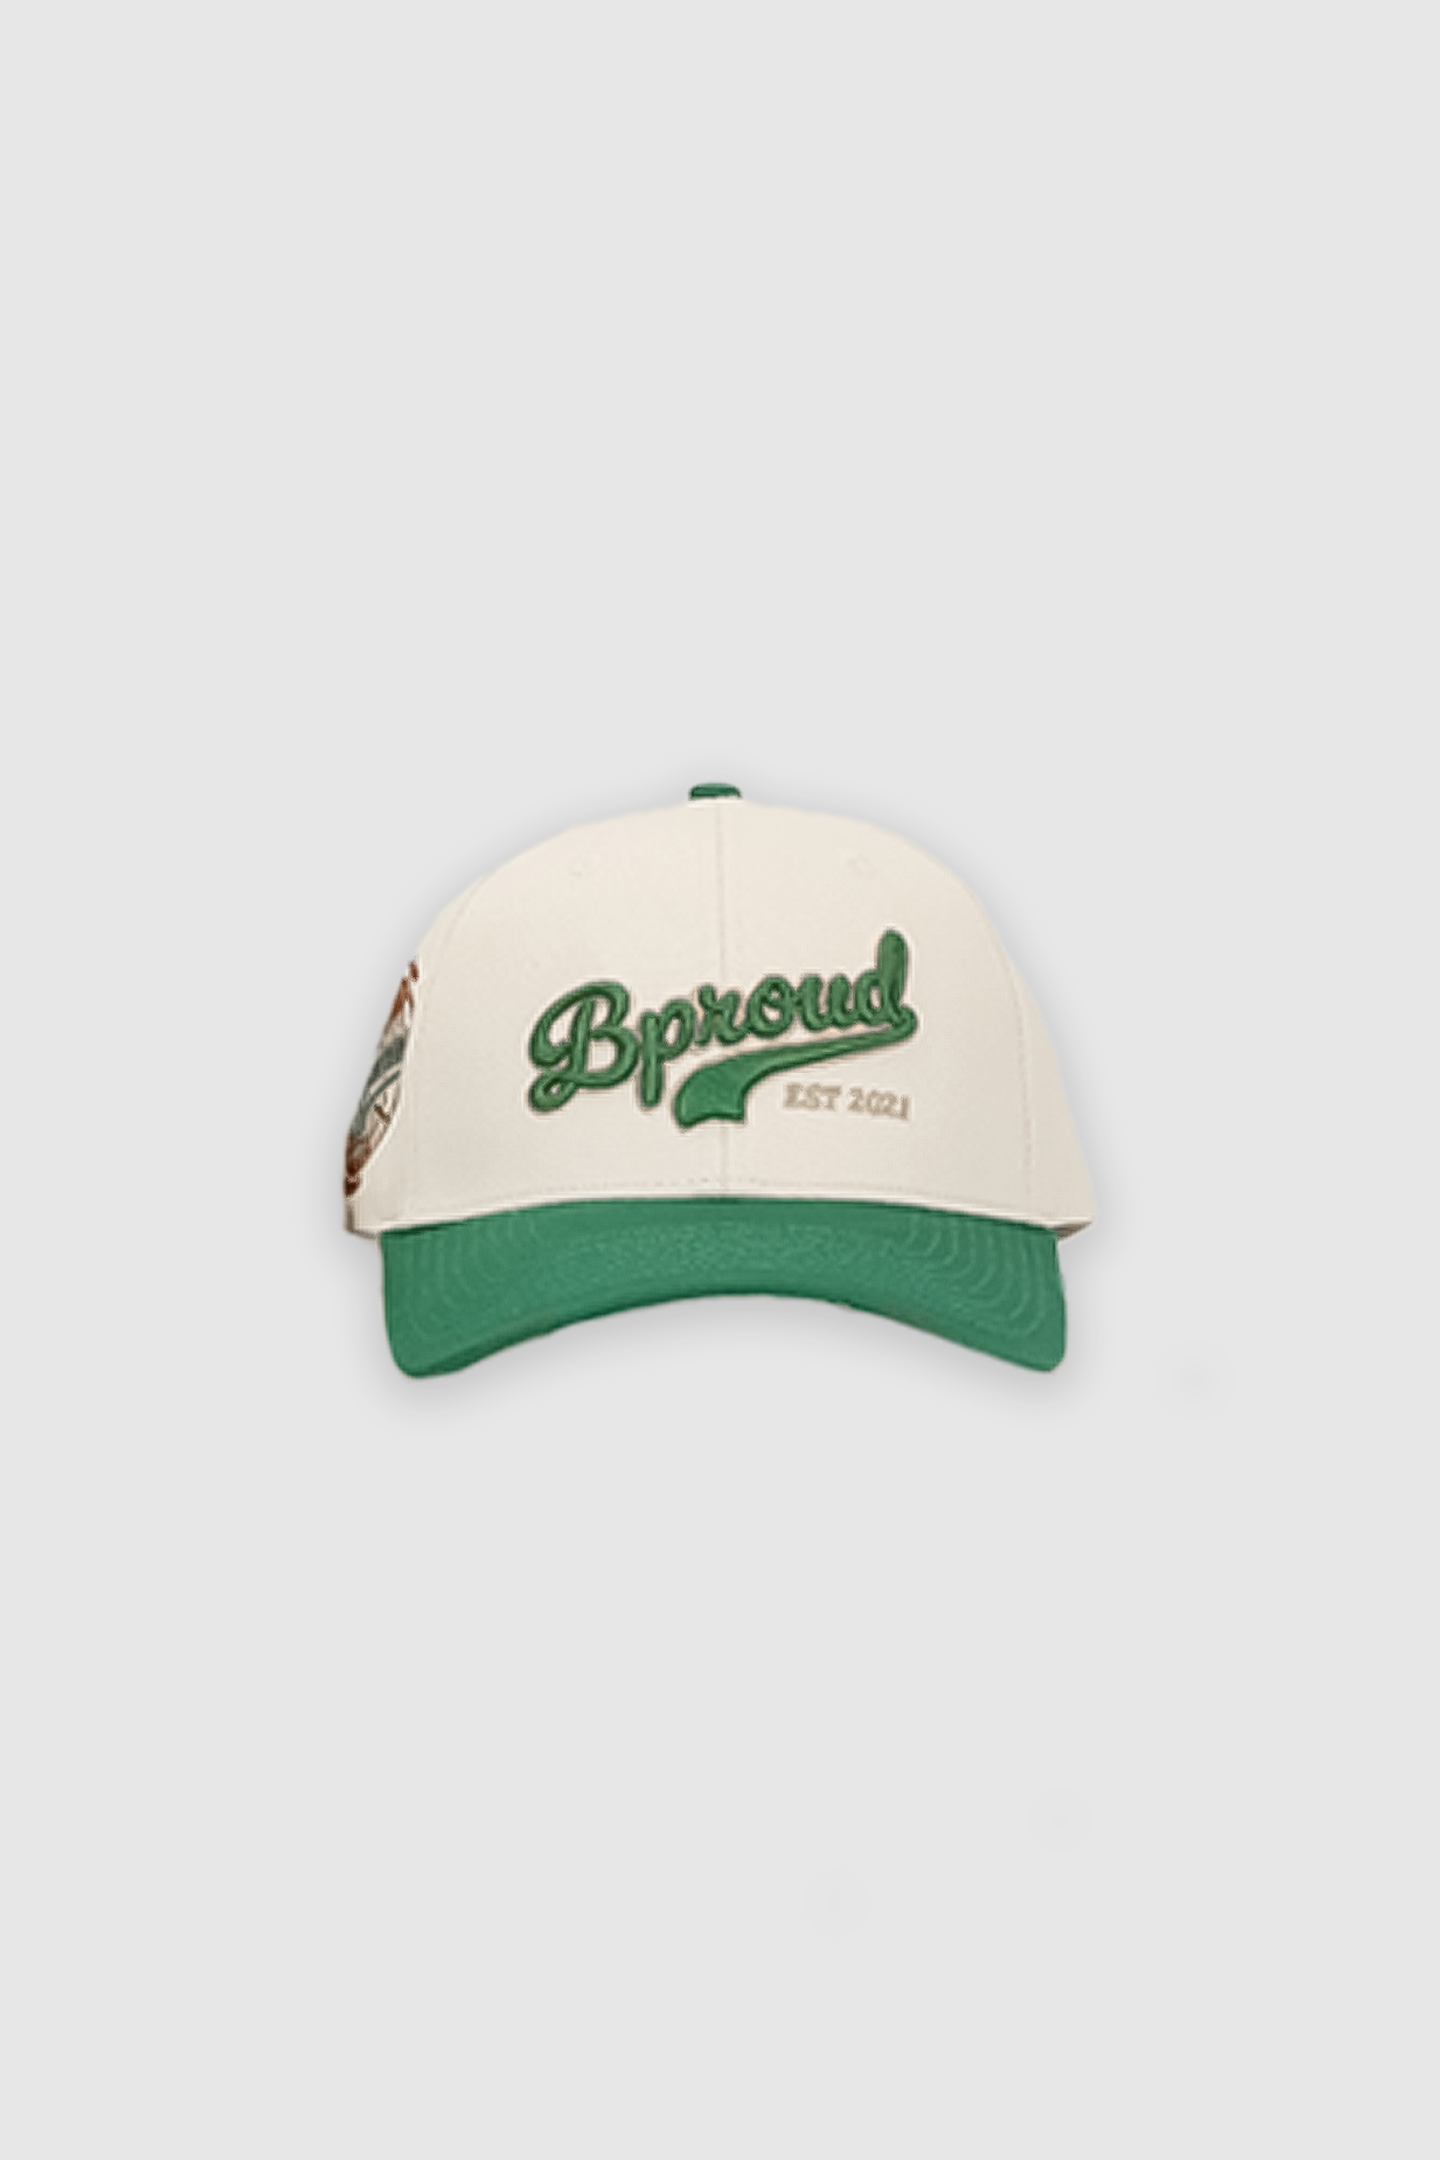 Bproud "Forest Green" Baseball Cap